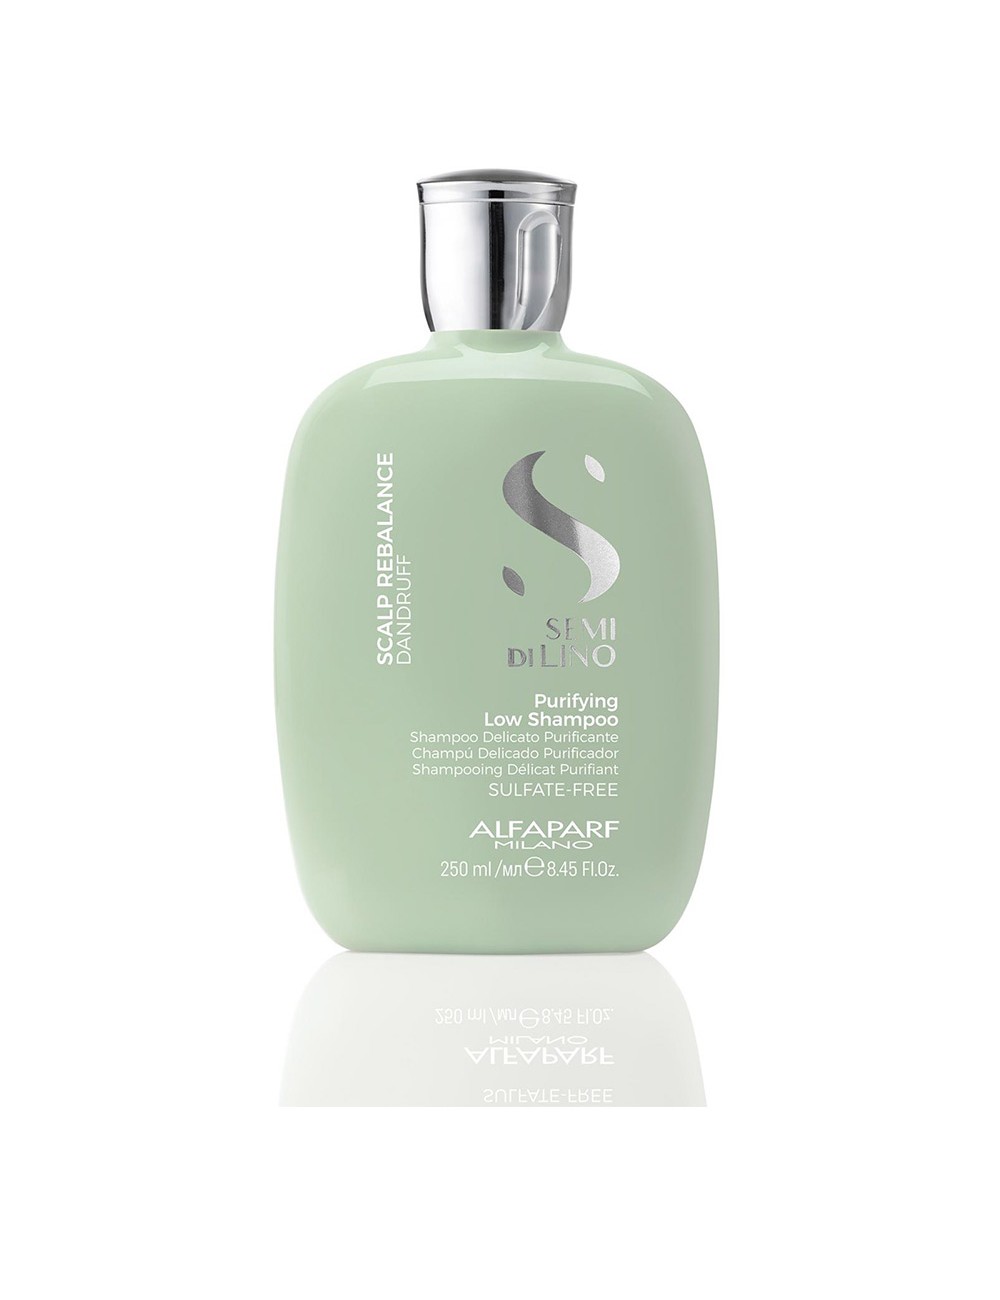 SEMI DI LINO purifying low shampoo 250 ml